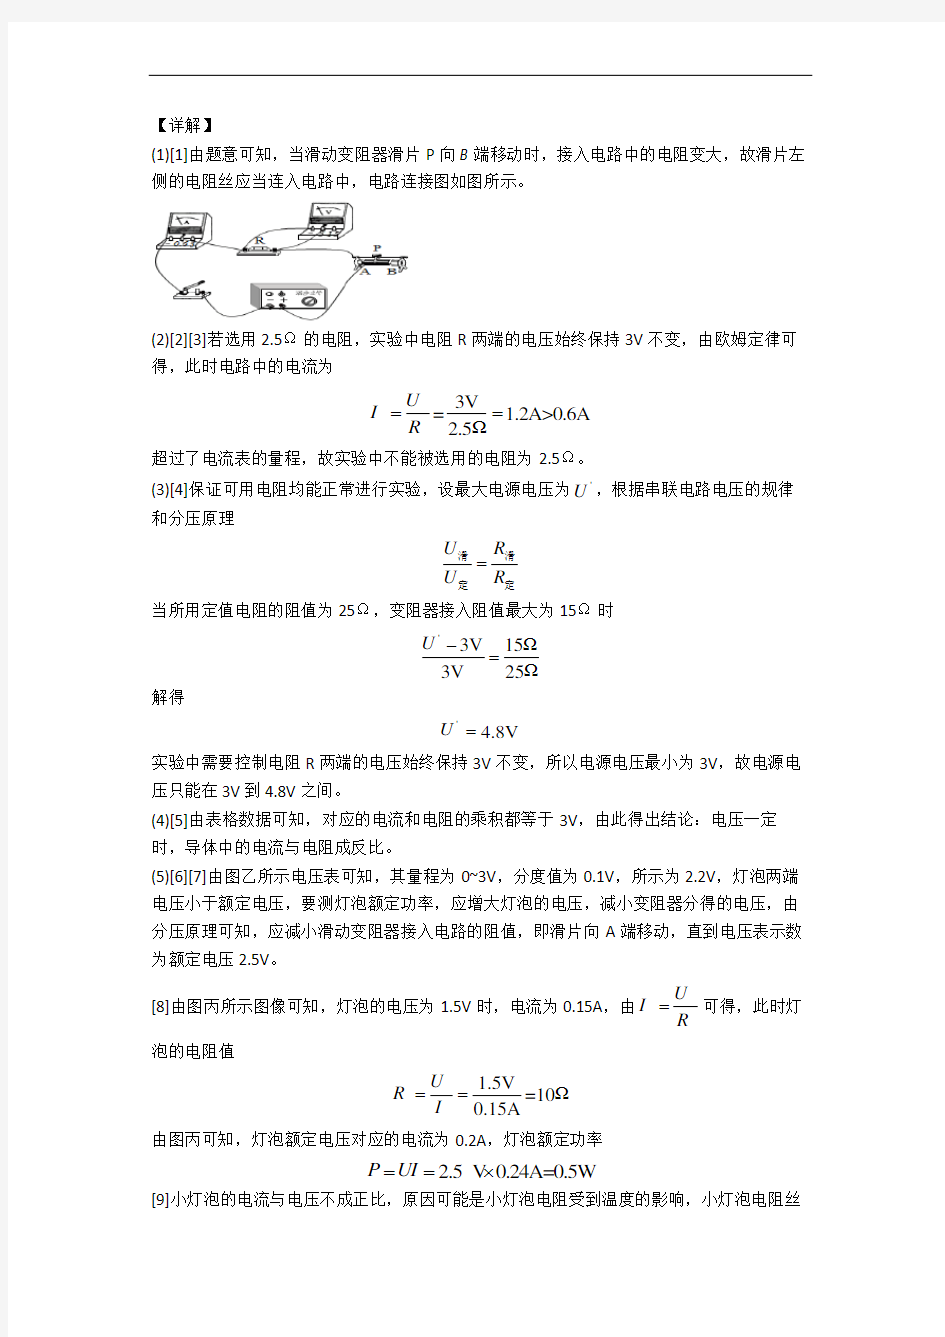 上海第一中学物理欧姆定律单元达标训练题(Word版 含答案)